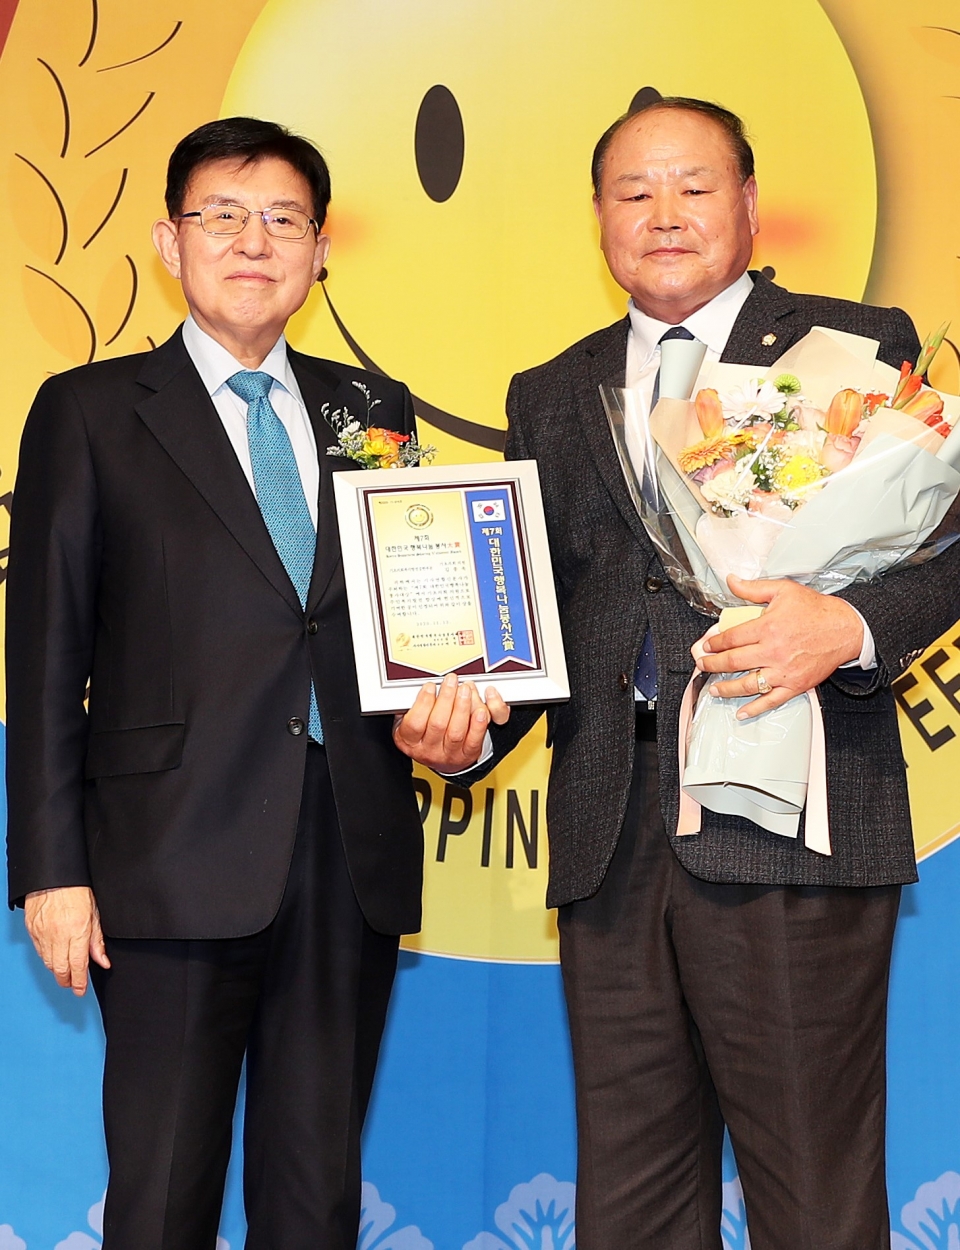 오른쪽 김종욱 의원